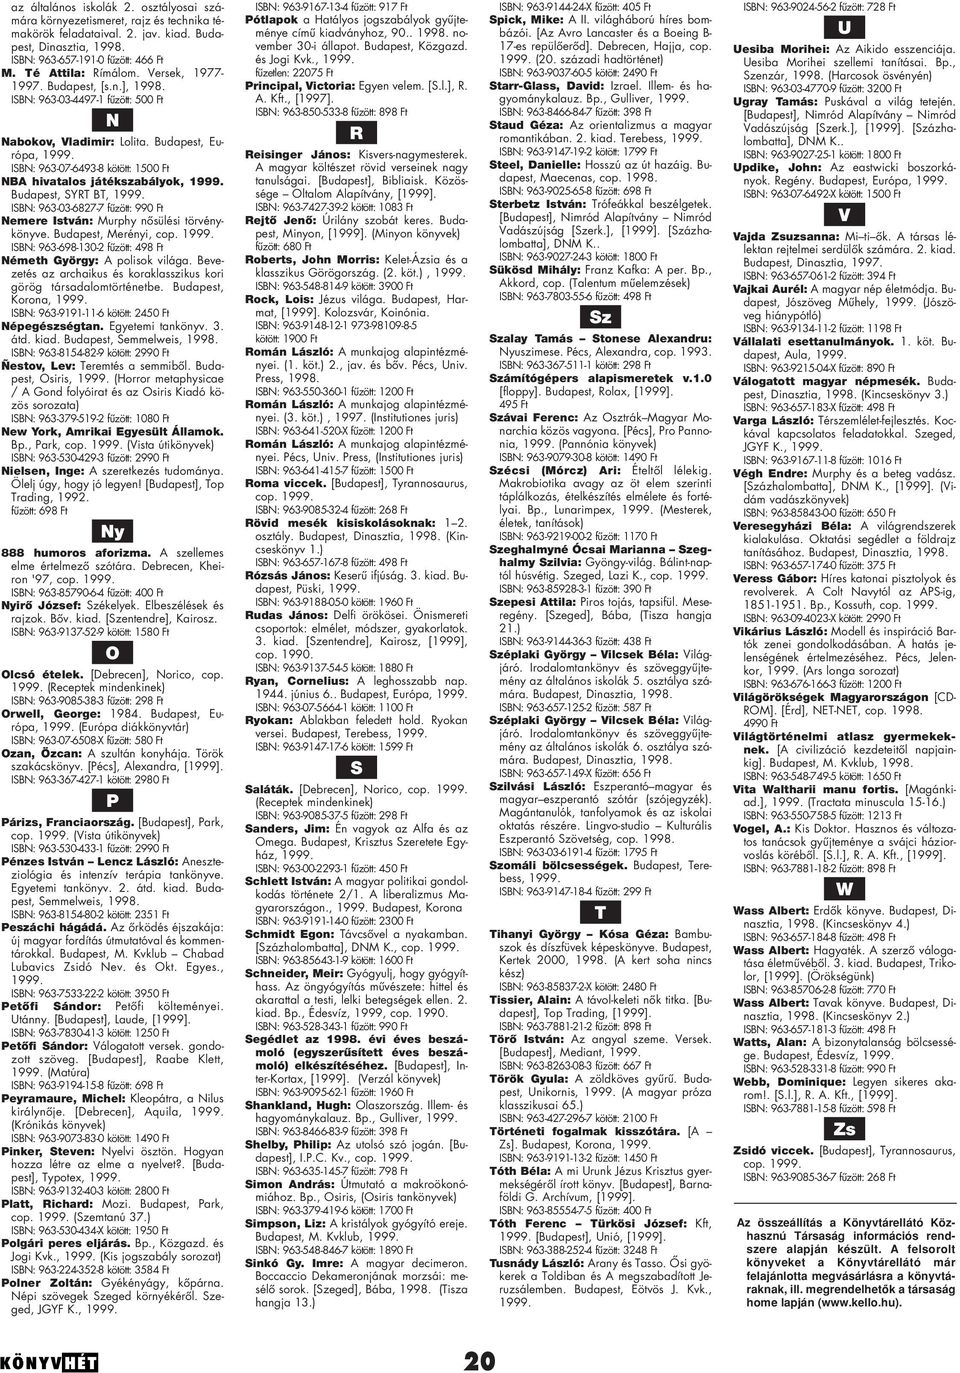 Budapest, Európa, ISBN: 963-07-6493-8 kötött: 1500 Ft NBA hivatalos játékszabályok, Budapest, SYRT BT, ISBN: 963-03-6827-7 fûzött: 990 Ft Nemere István: Murphy nôsülési törvénykönyve.